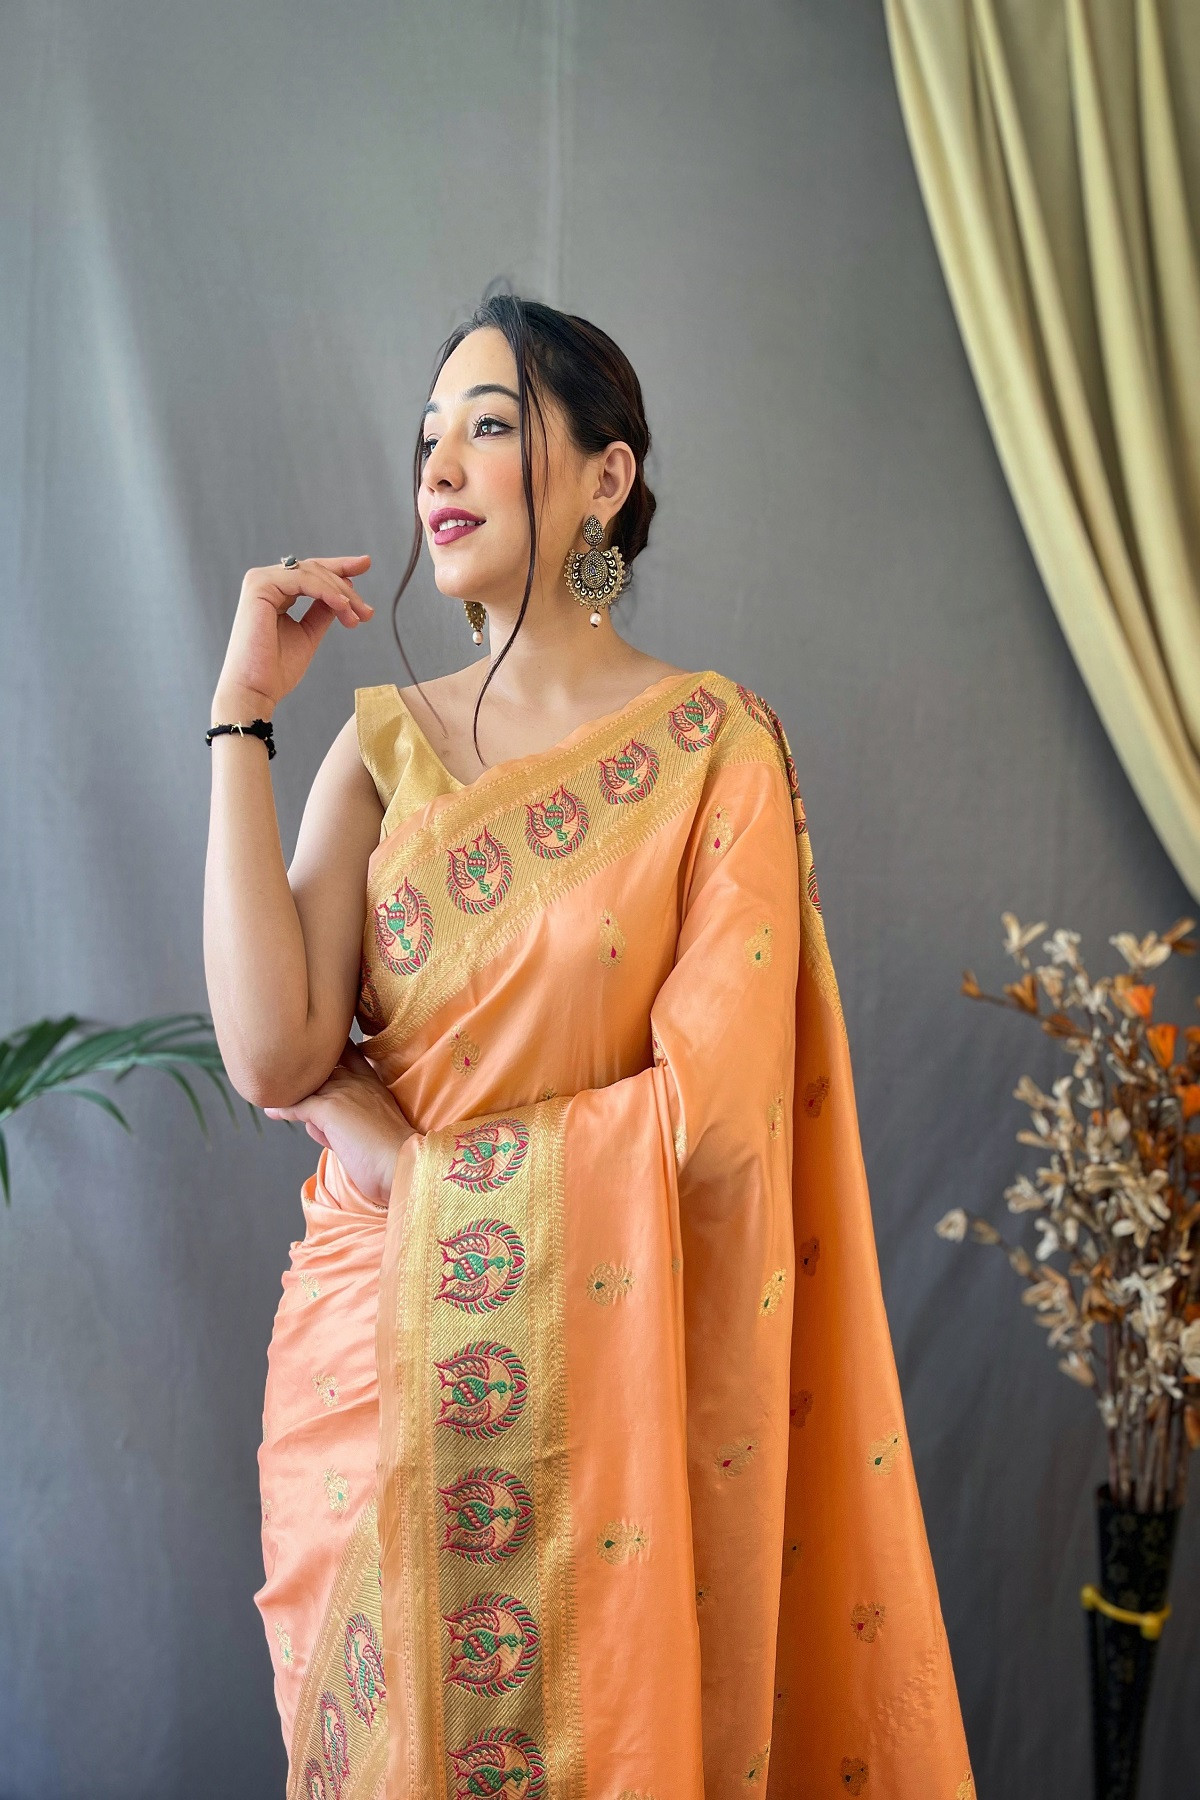 Paithani Silk saree with Meenakari woven Border & Pallu - Orange